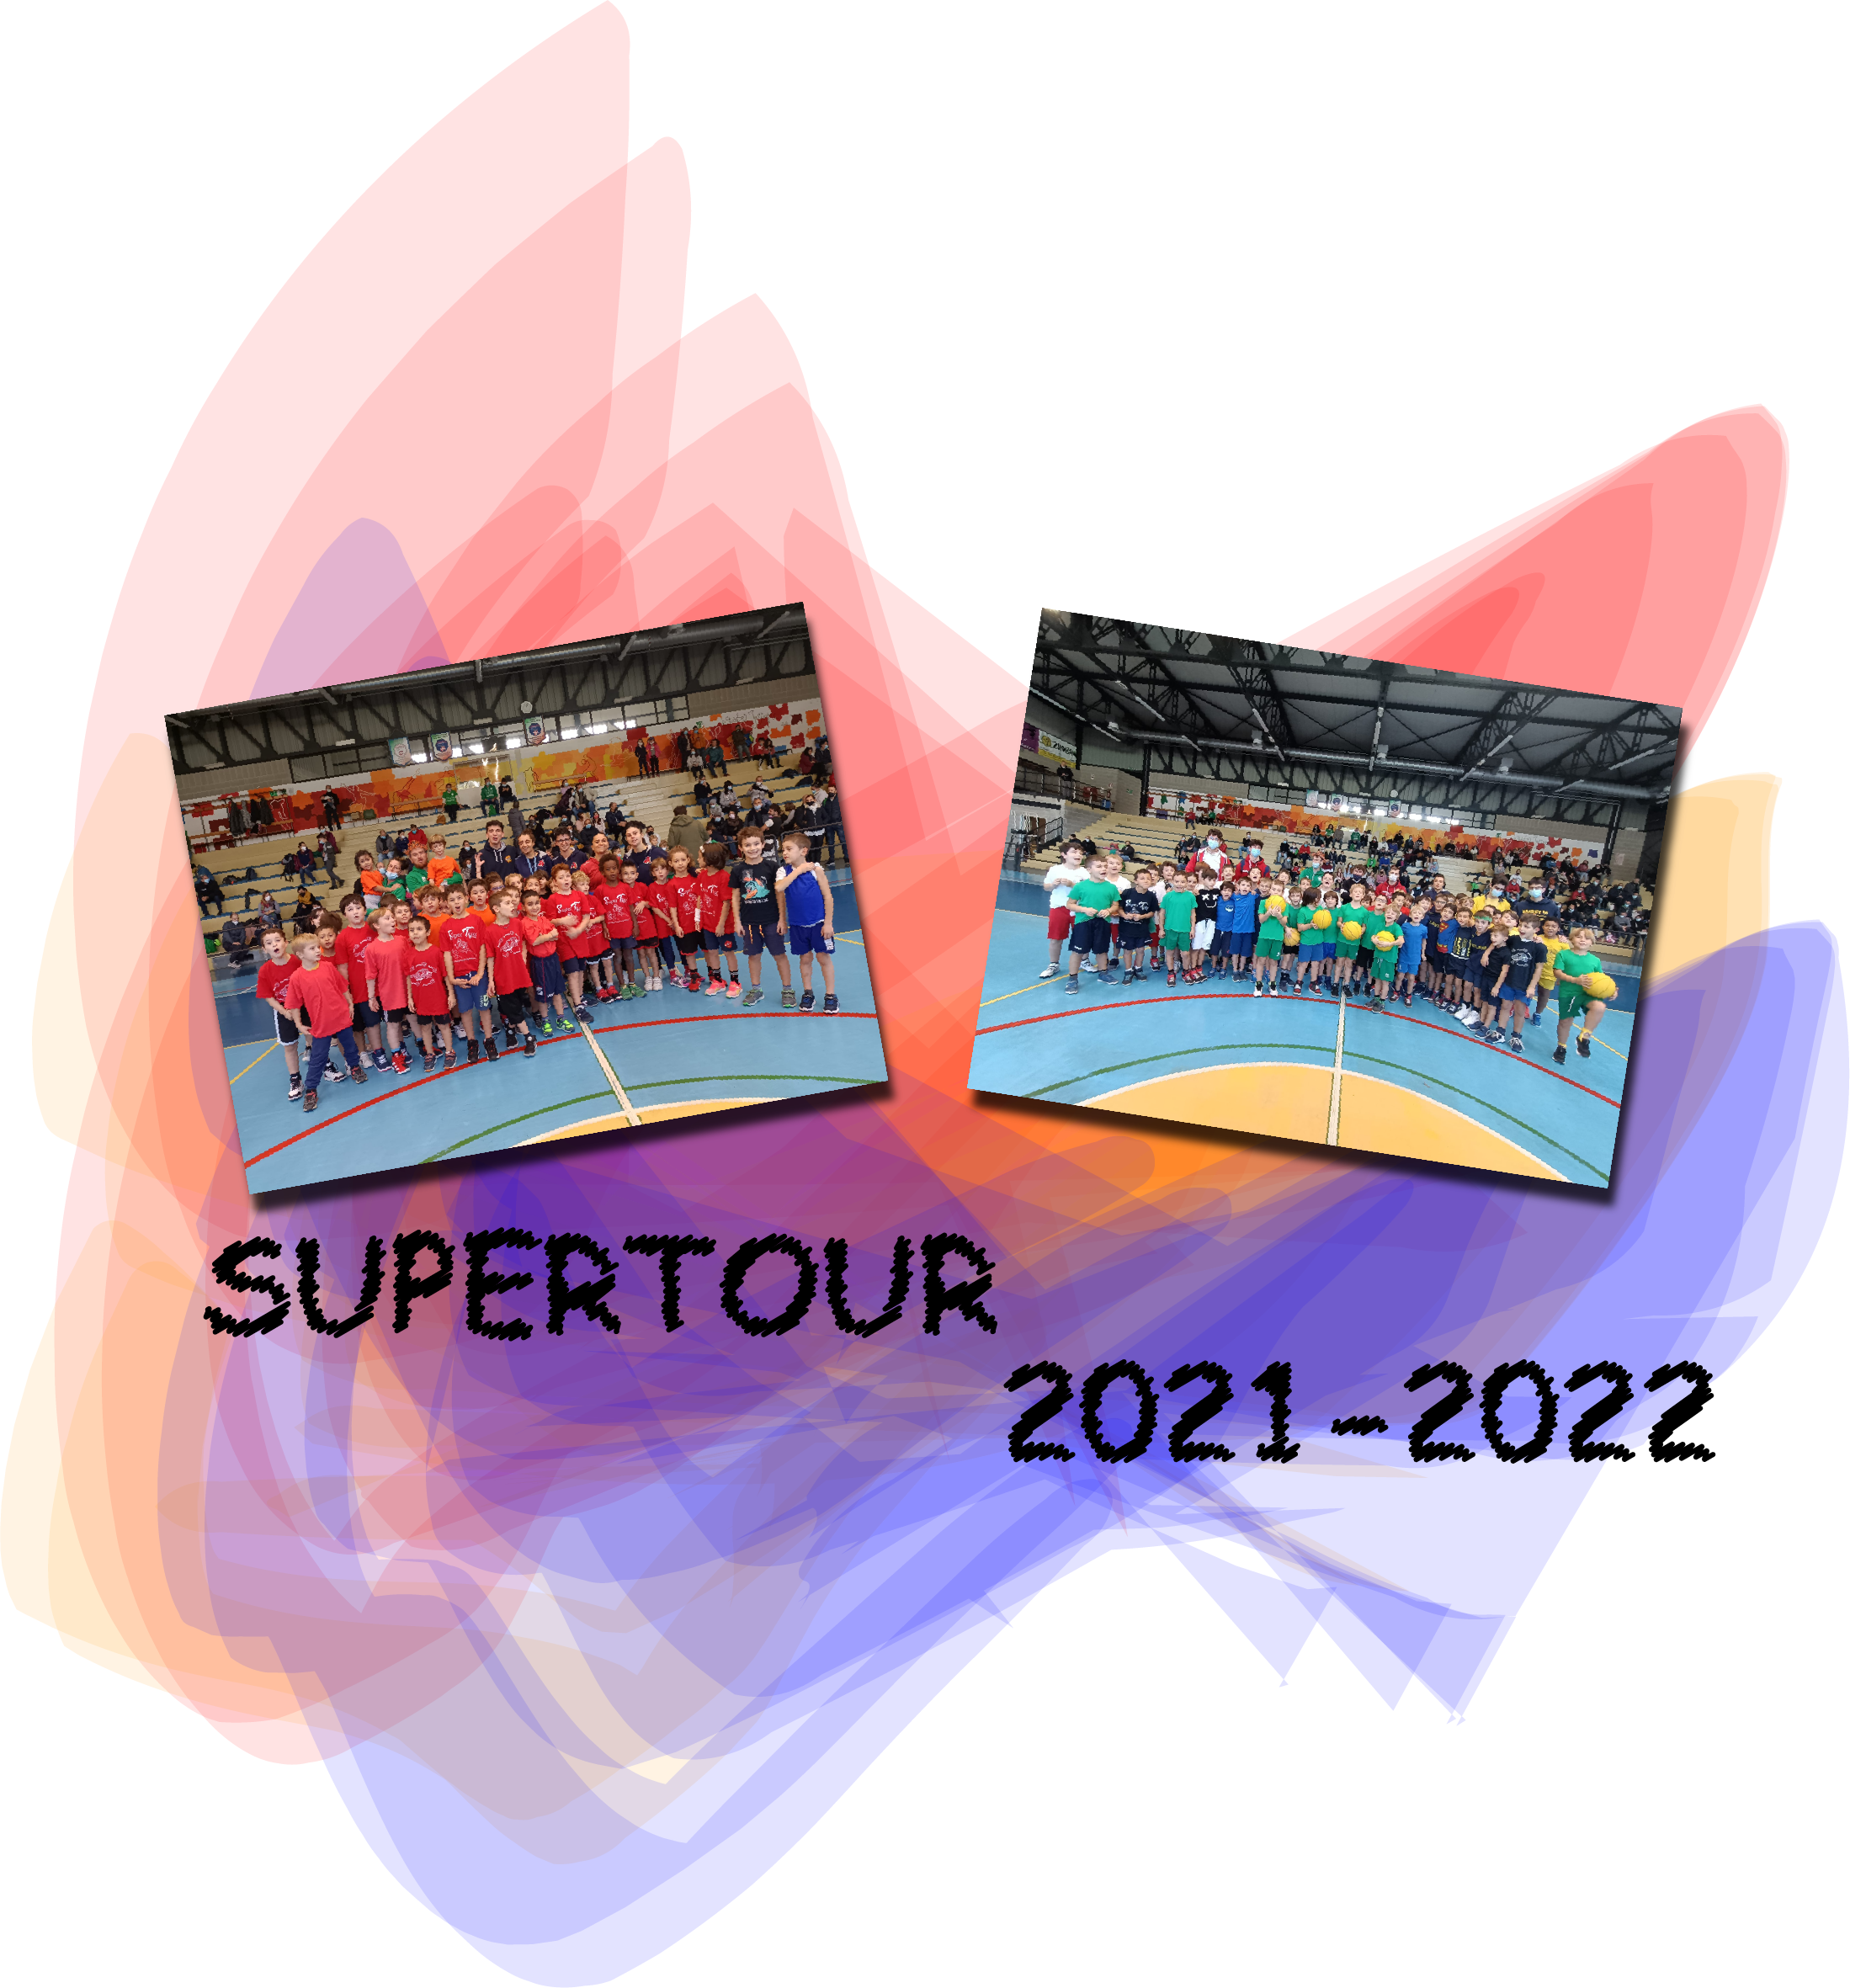 SuperTour 2021-2022: divertimento per i bambini ..un successo!